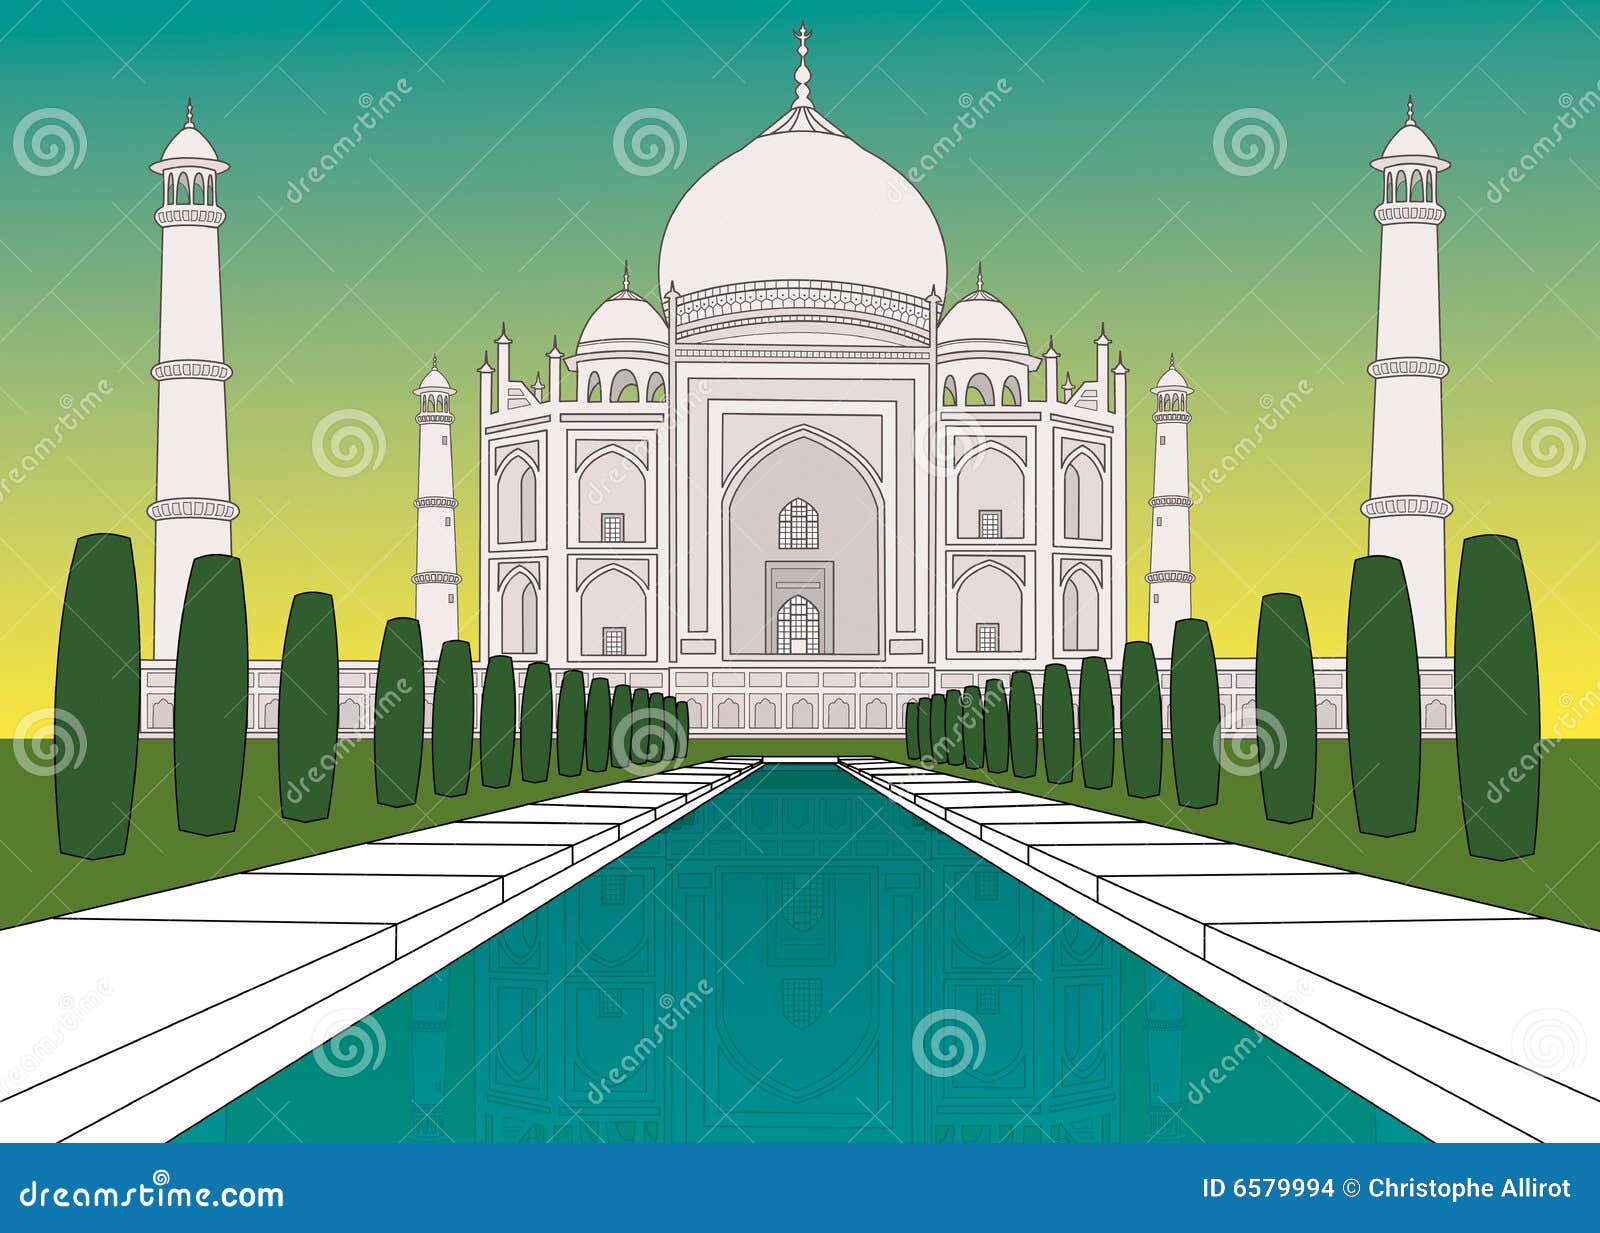 Taj Mahal Garden Stock Illustrations – 112 Taj Mahal Garden Stock  Illustrations, Vectors & Clipart - Dreamstime